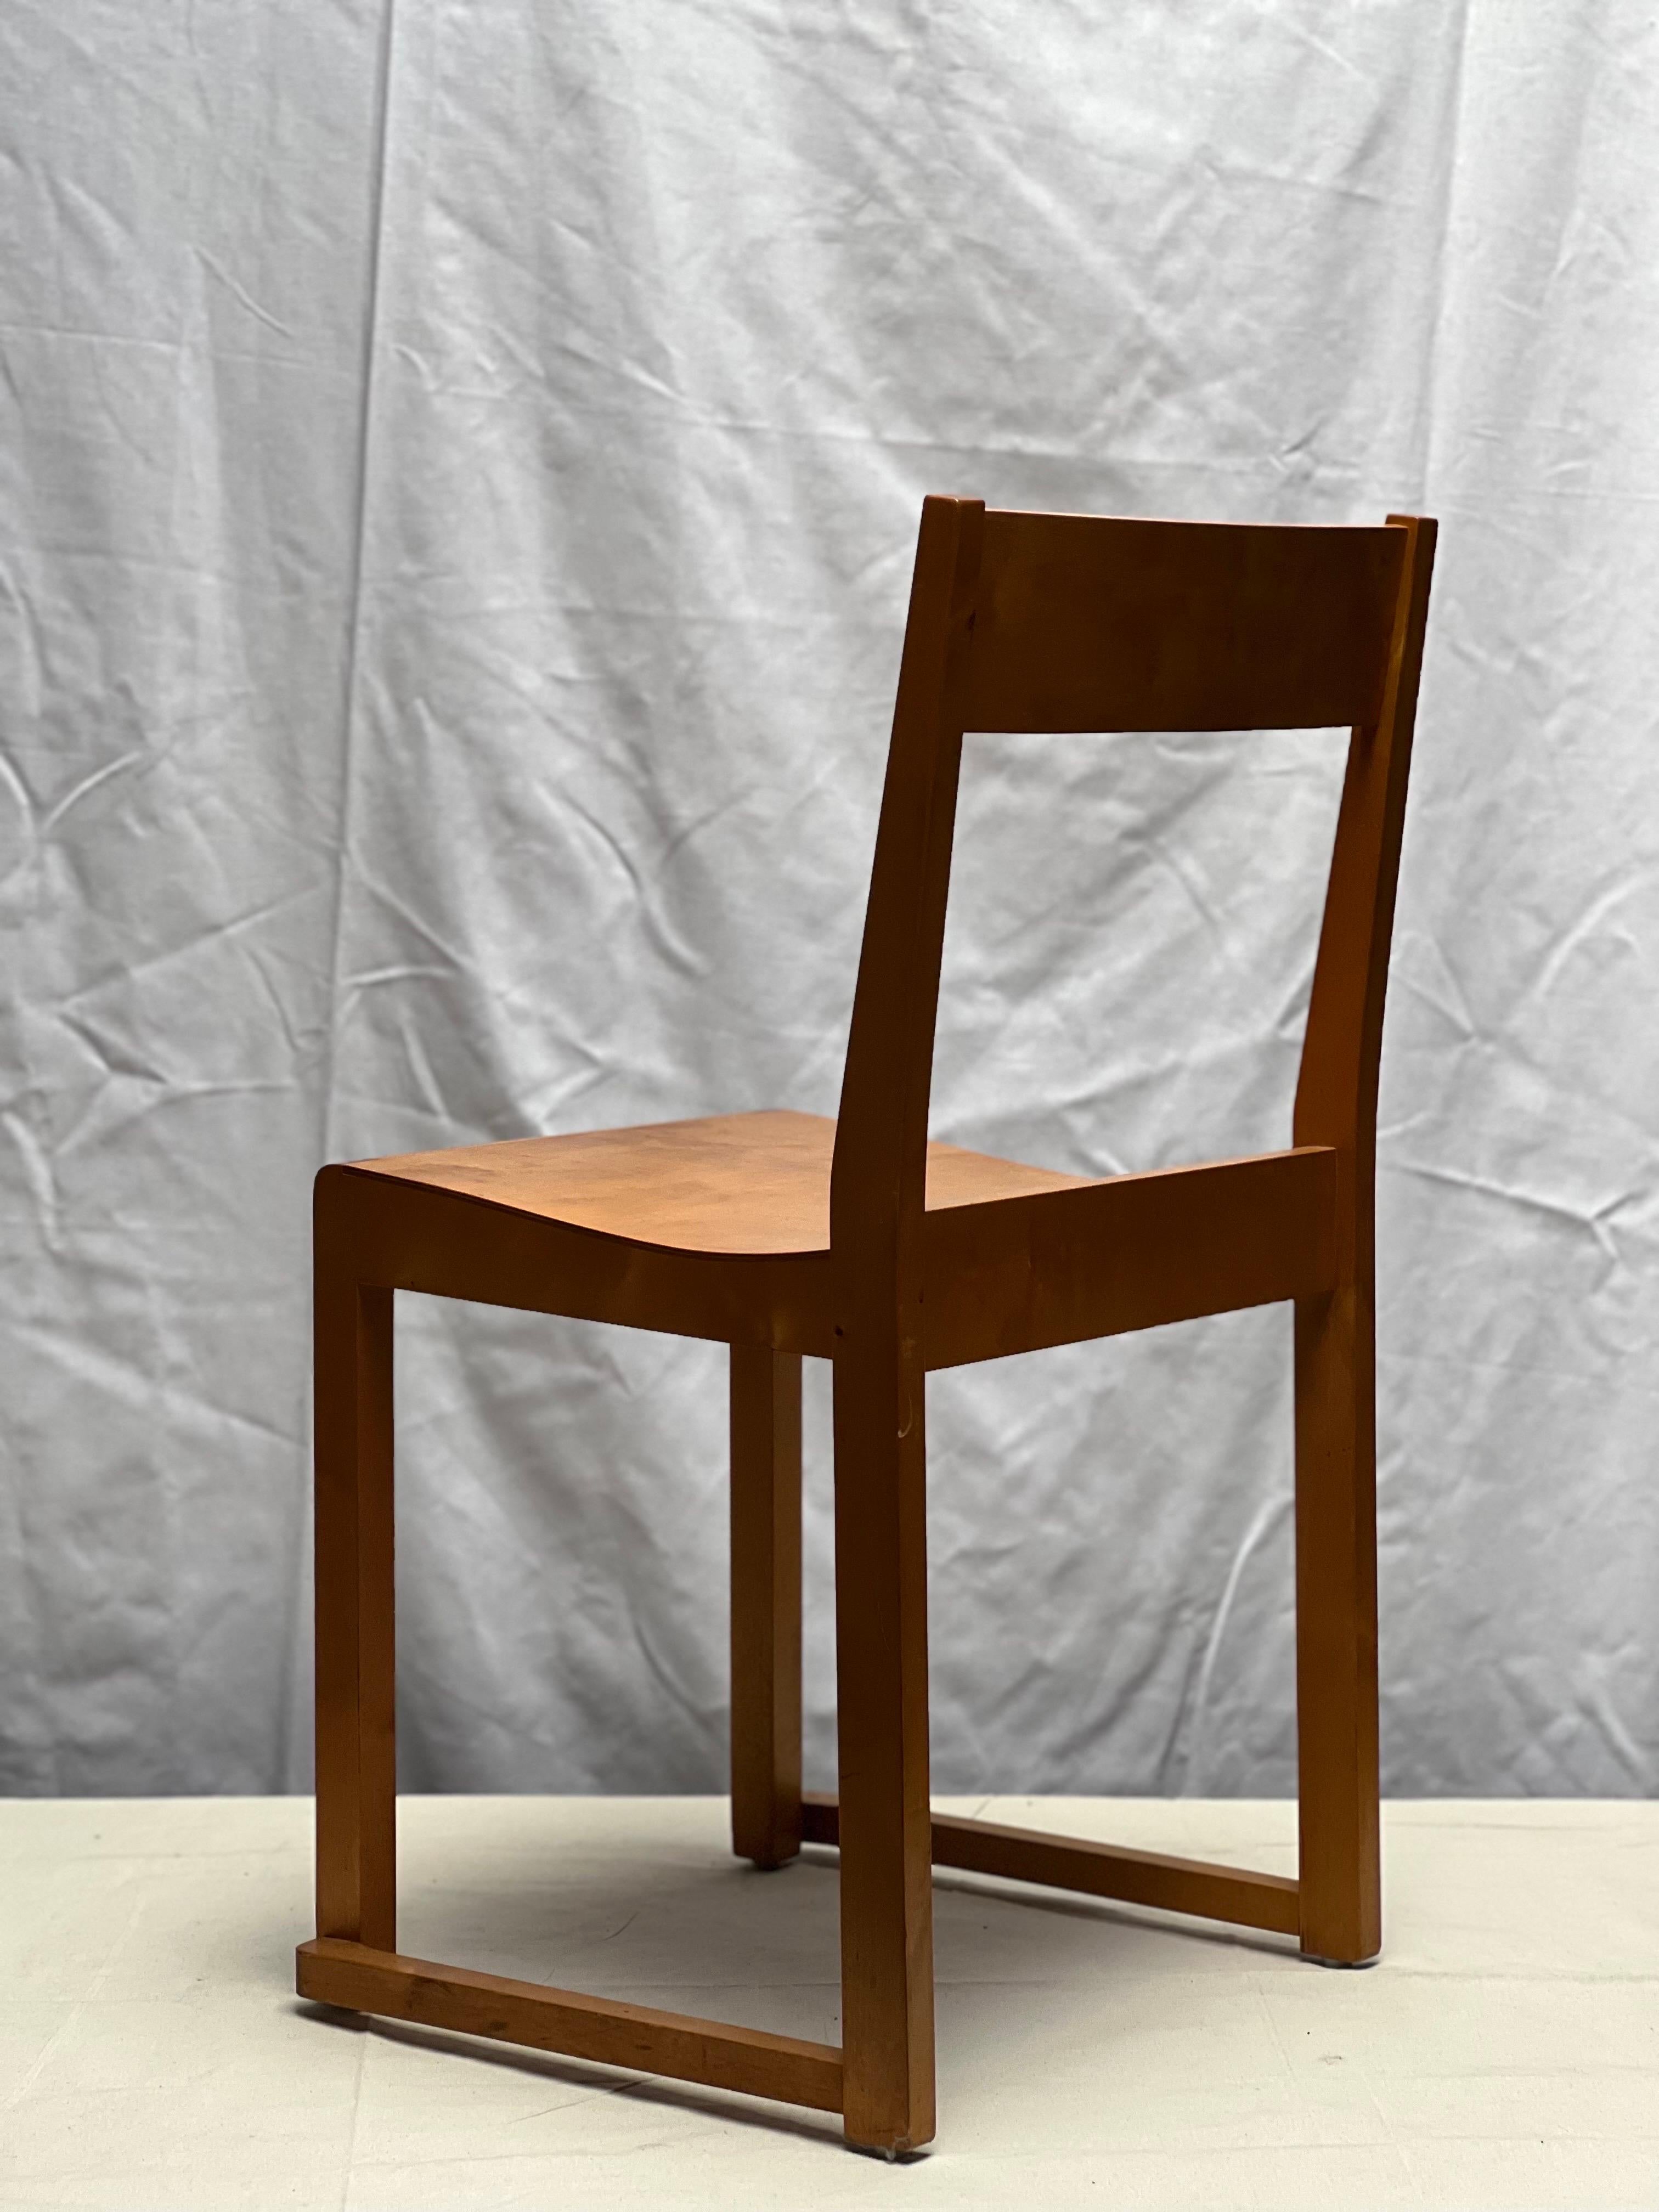 Imitation cuir Sven Markelius chaises empilables modernistes en parfait état, 1931, joli ensemble de 6 pièces